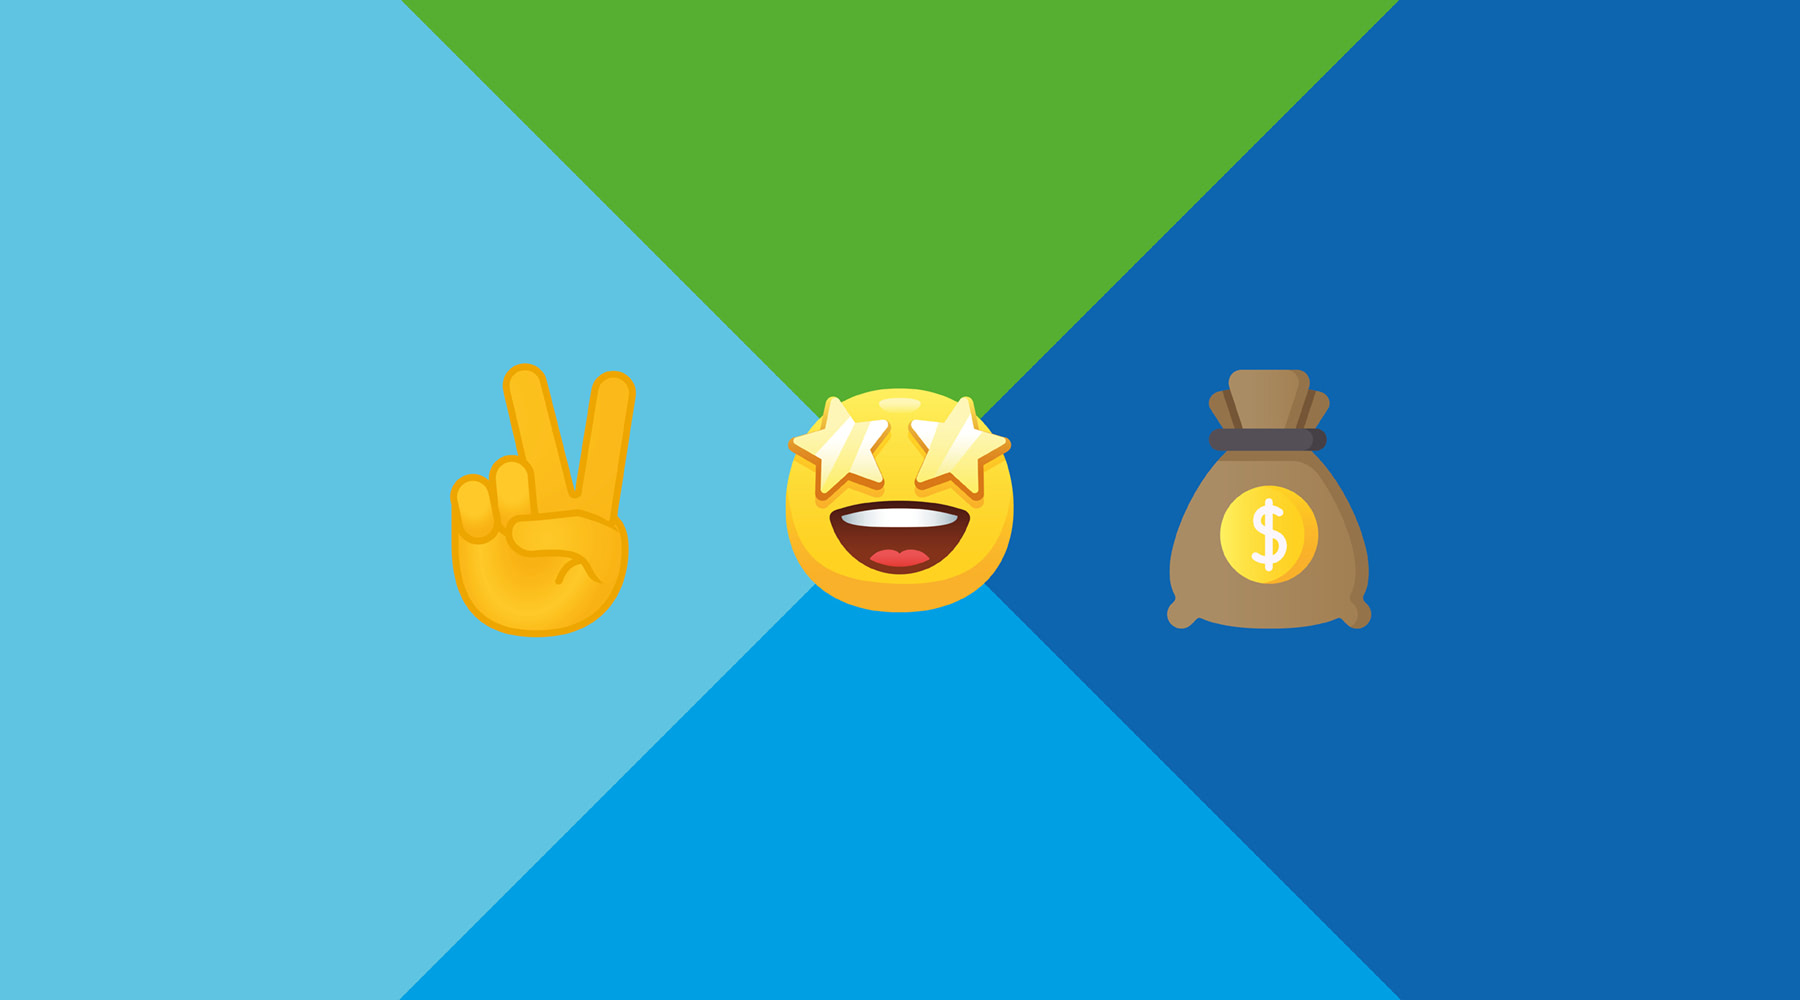 Bunter Hintergrund mit drei Emojis darauf